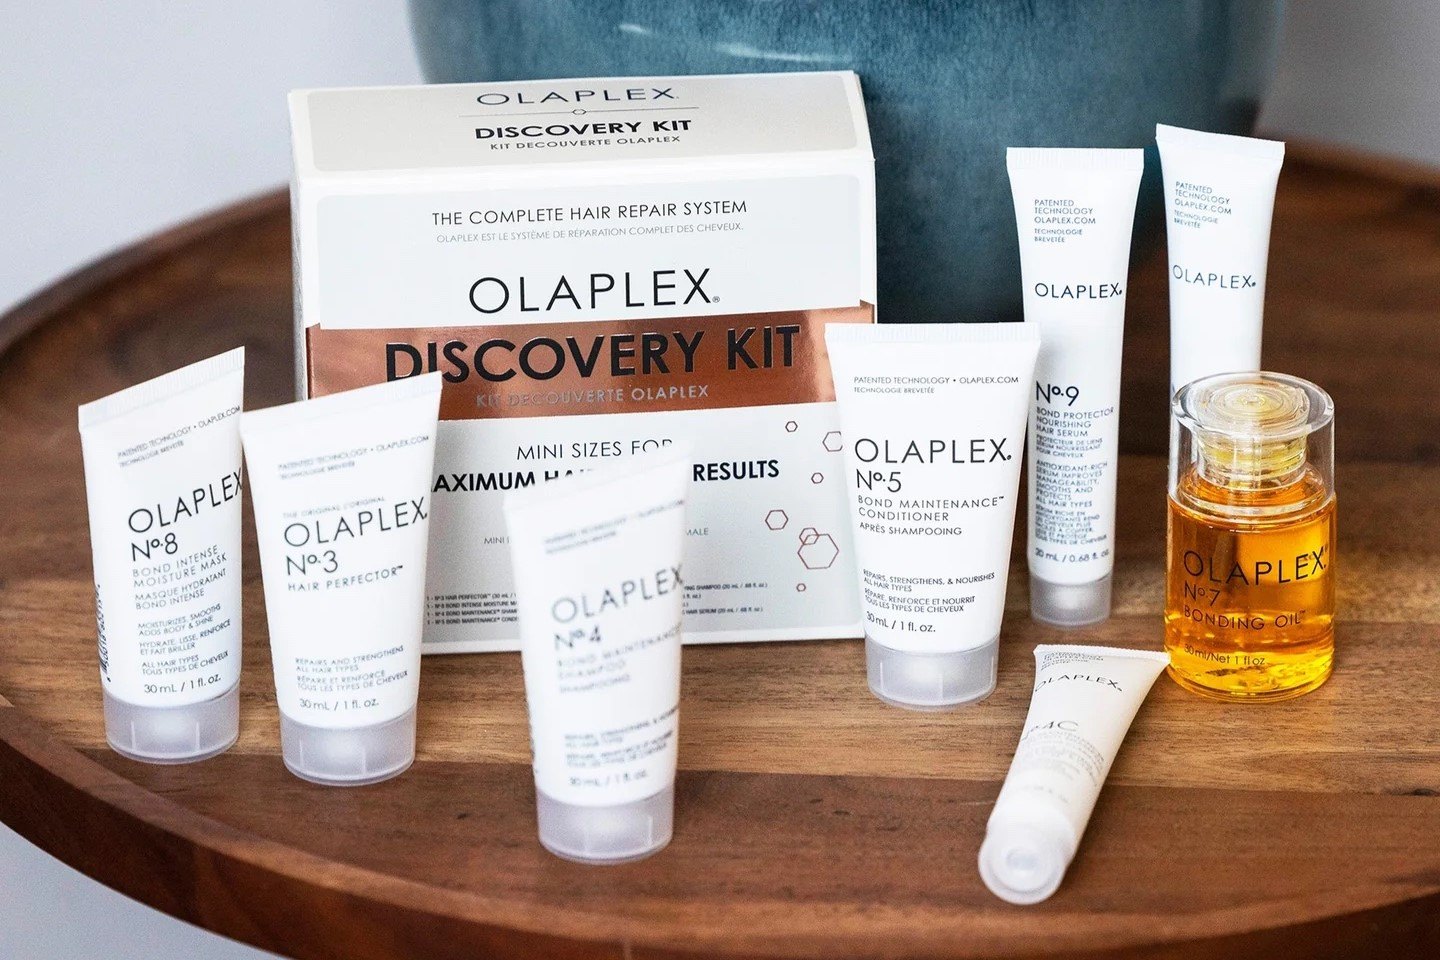 How To Use Olaplex Bonding Oil For Stronger, Healthier Hair